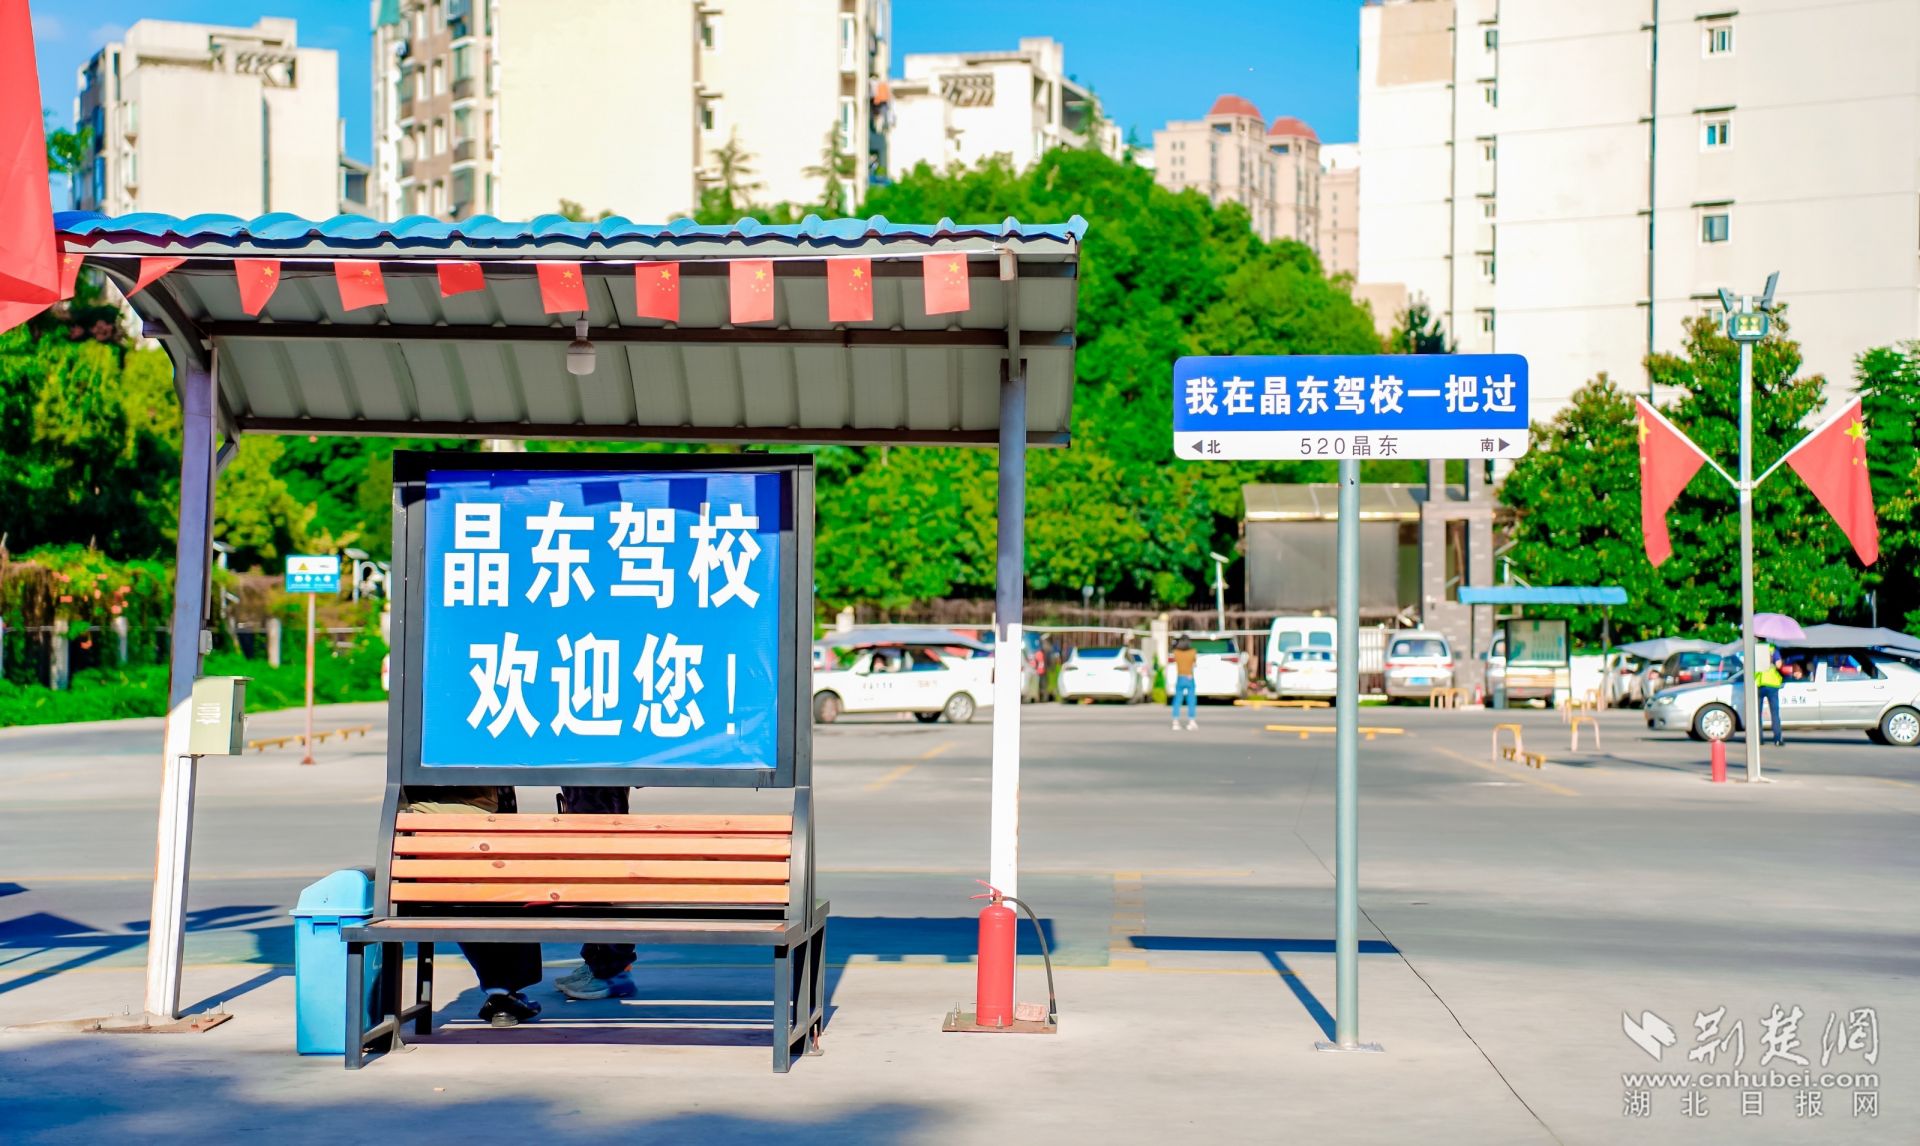 米乐m6·(中国)官方网站武汉驾培公共服务平台上线 为学员提供“一站式”学车服务(图2)